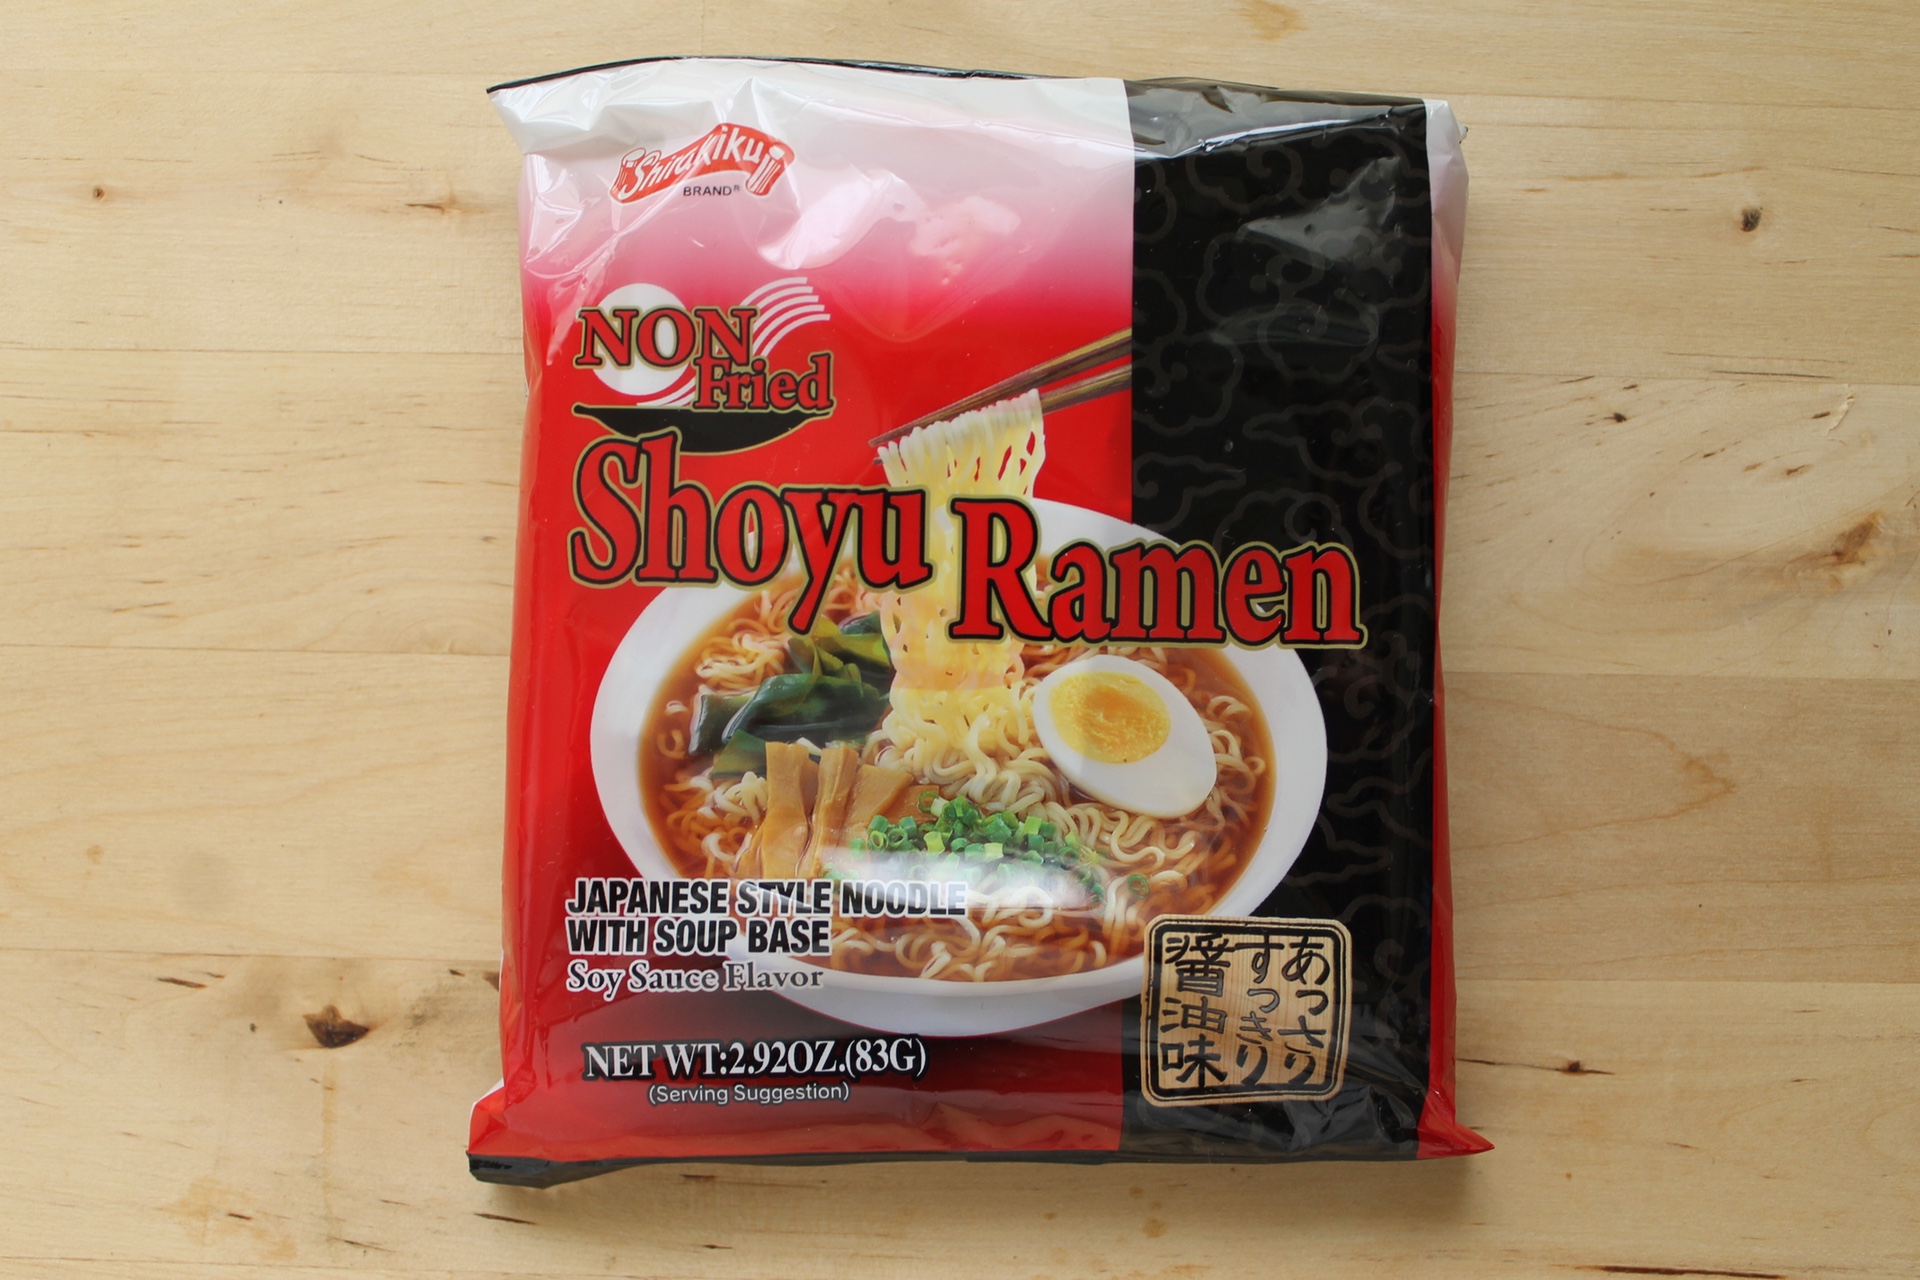 Shirakiku Non-Fried Shoyu Ramen.